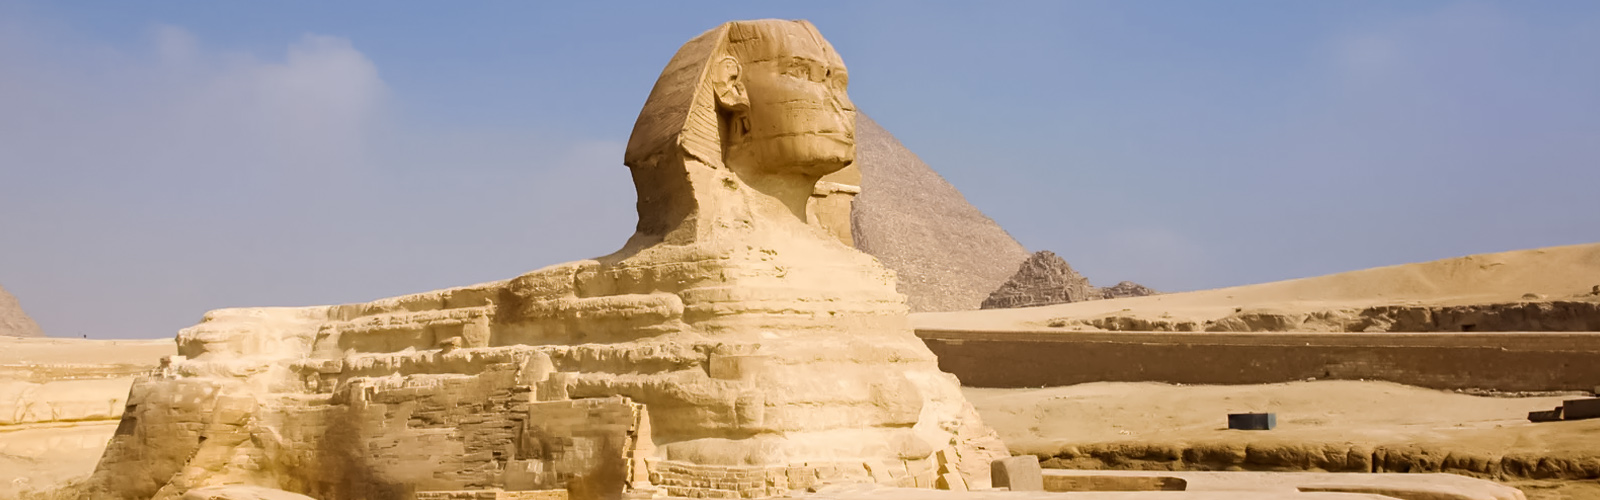 Sphinx Of Giza Sphinx of Giza